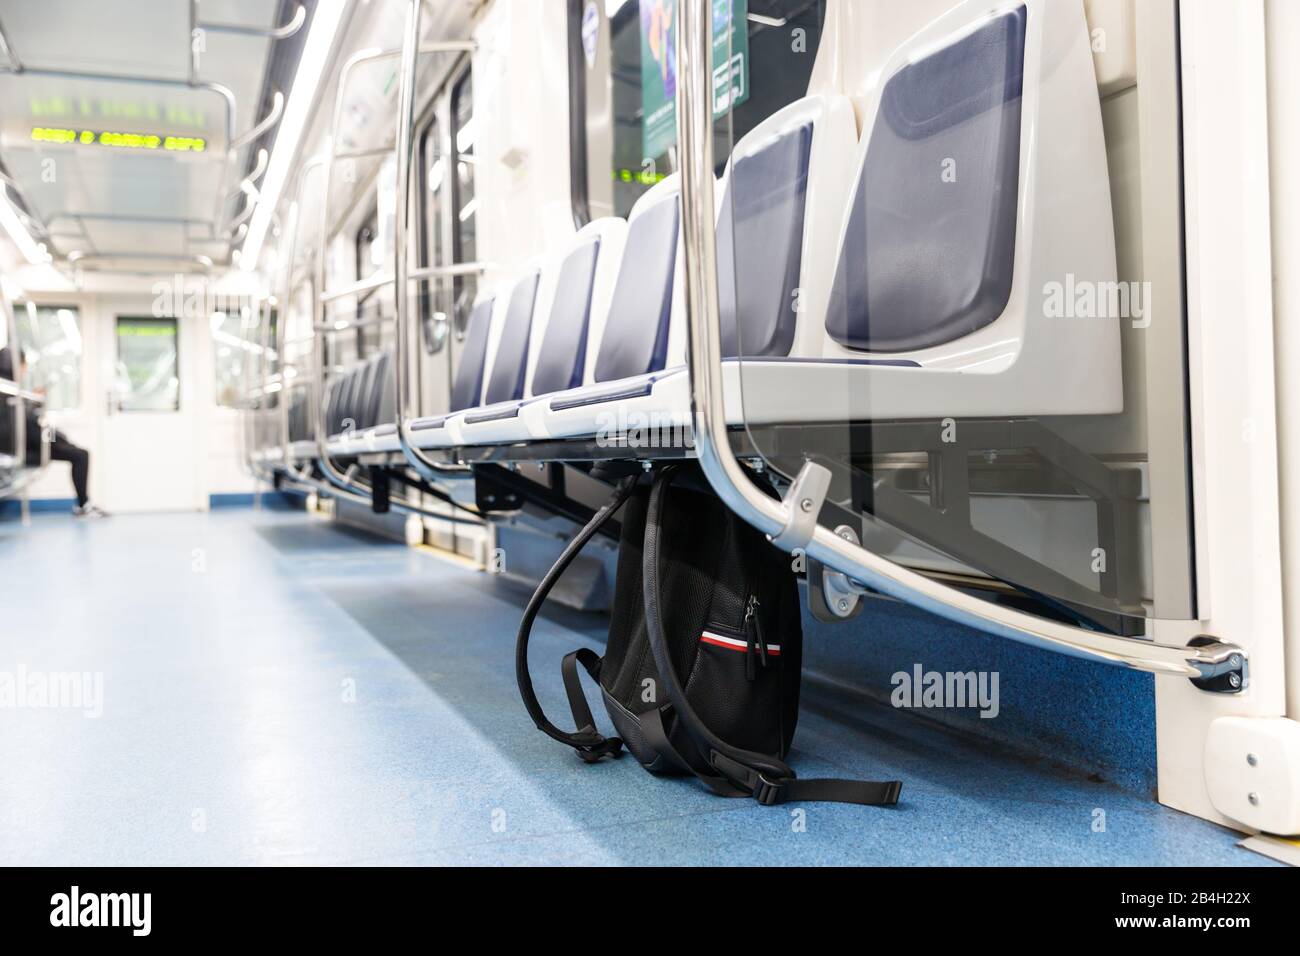 Zaino/borsa nera in pelle o bomba dimenticati per commettere un attacco terroristico si trova sotto il sedile in treno metropolitana, trasporto pubblico. Minaccia del terrorismo. Foto Stock